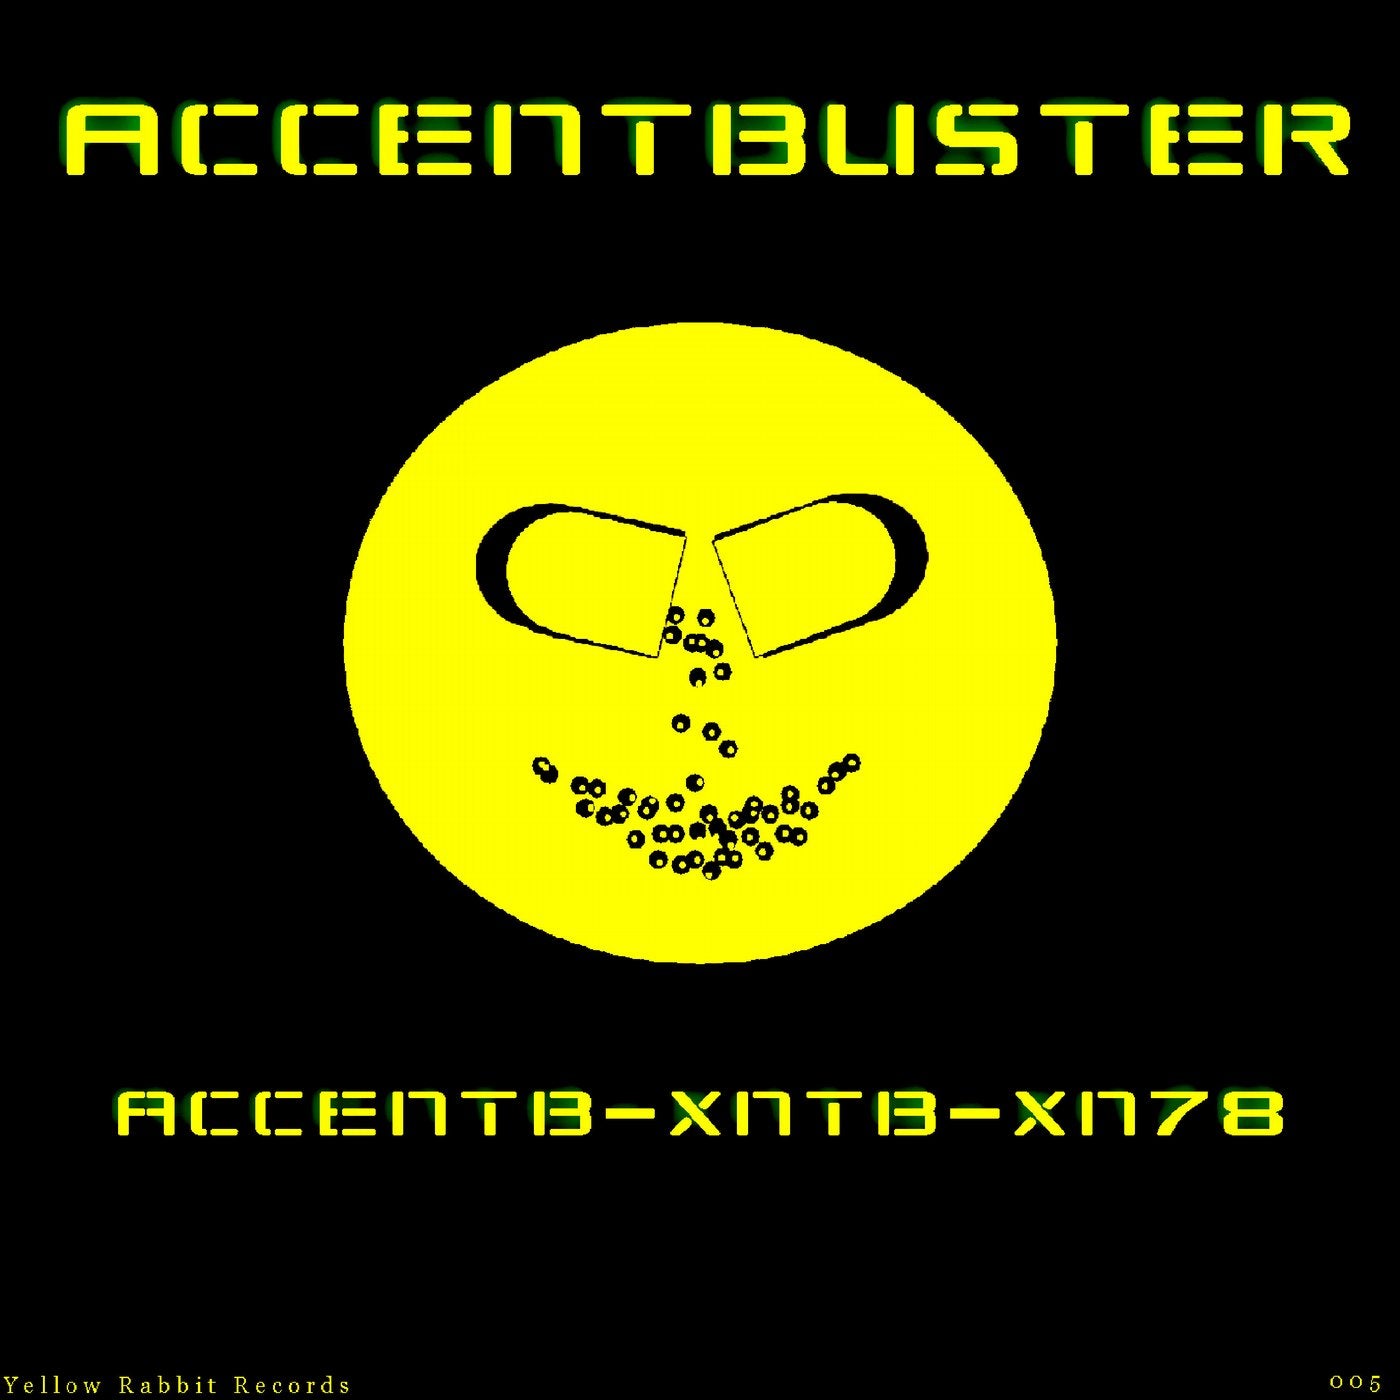 Accentb-Xntb-Xn78